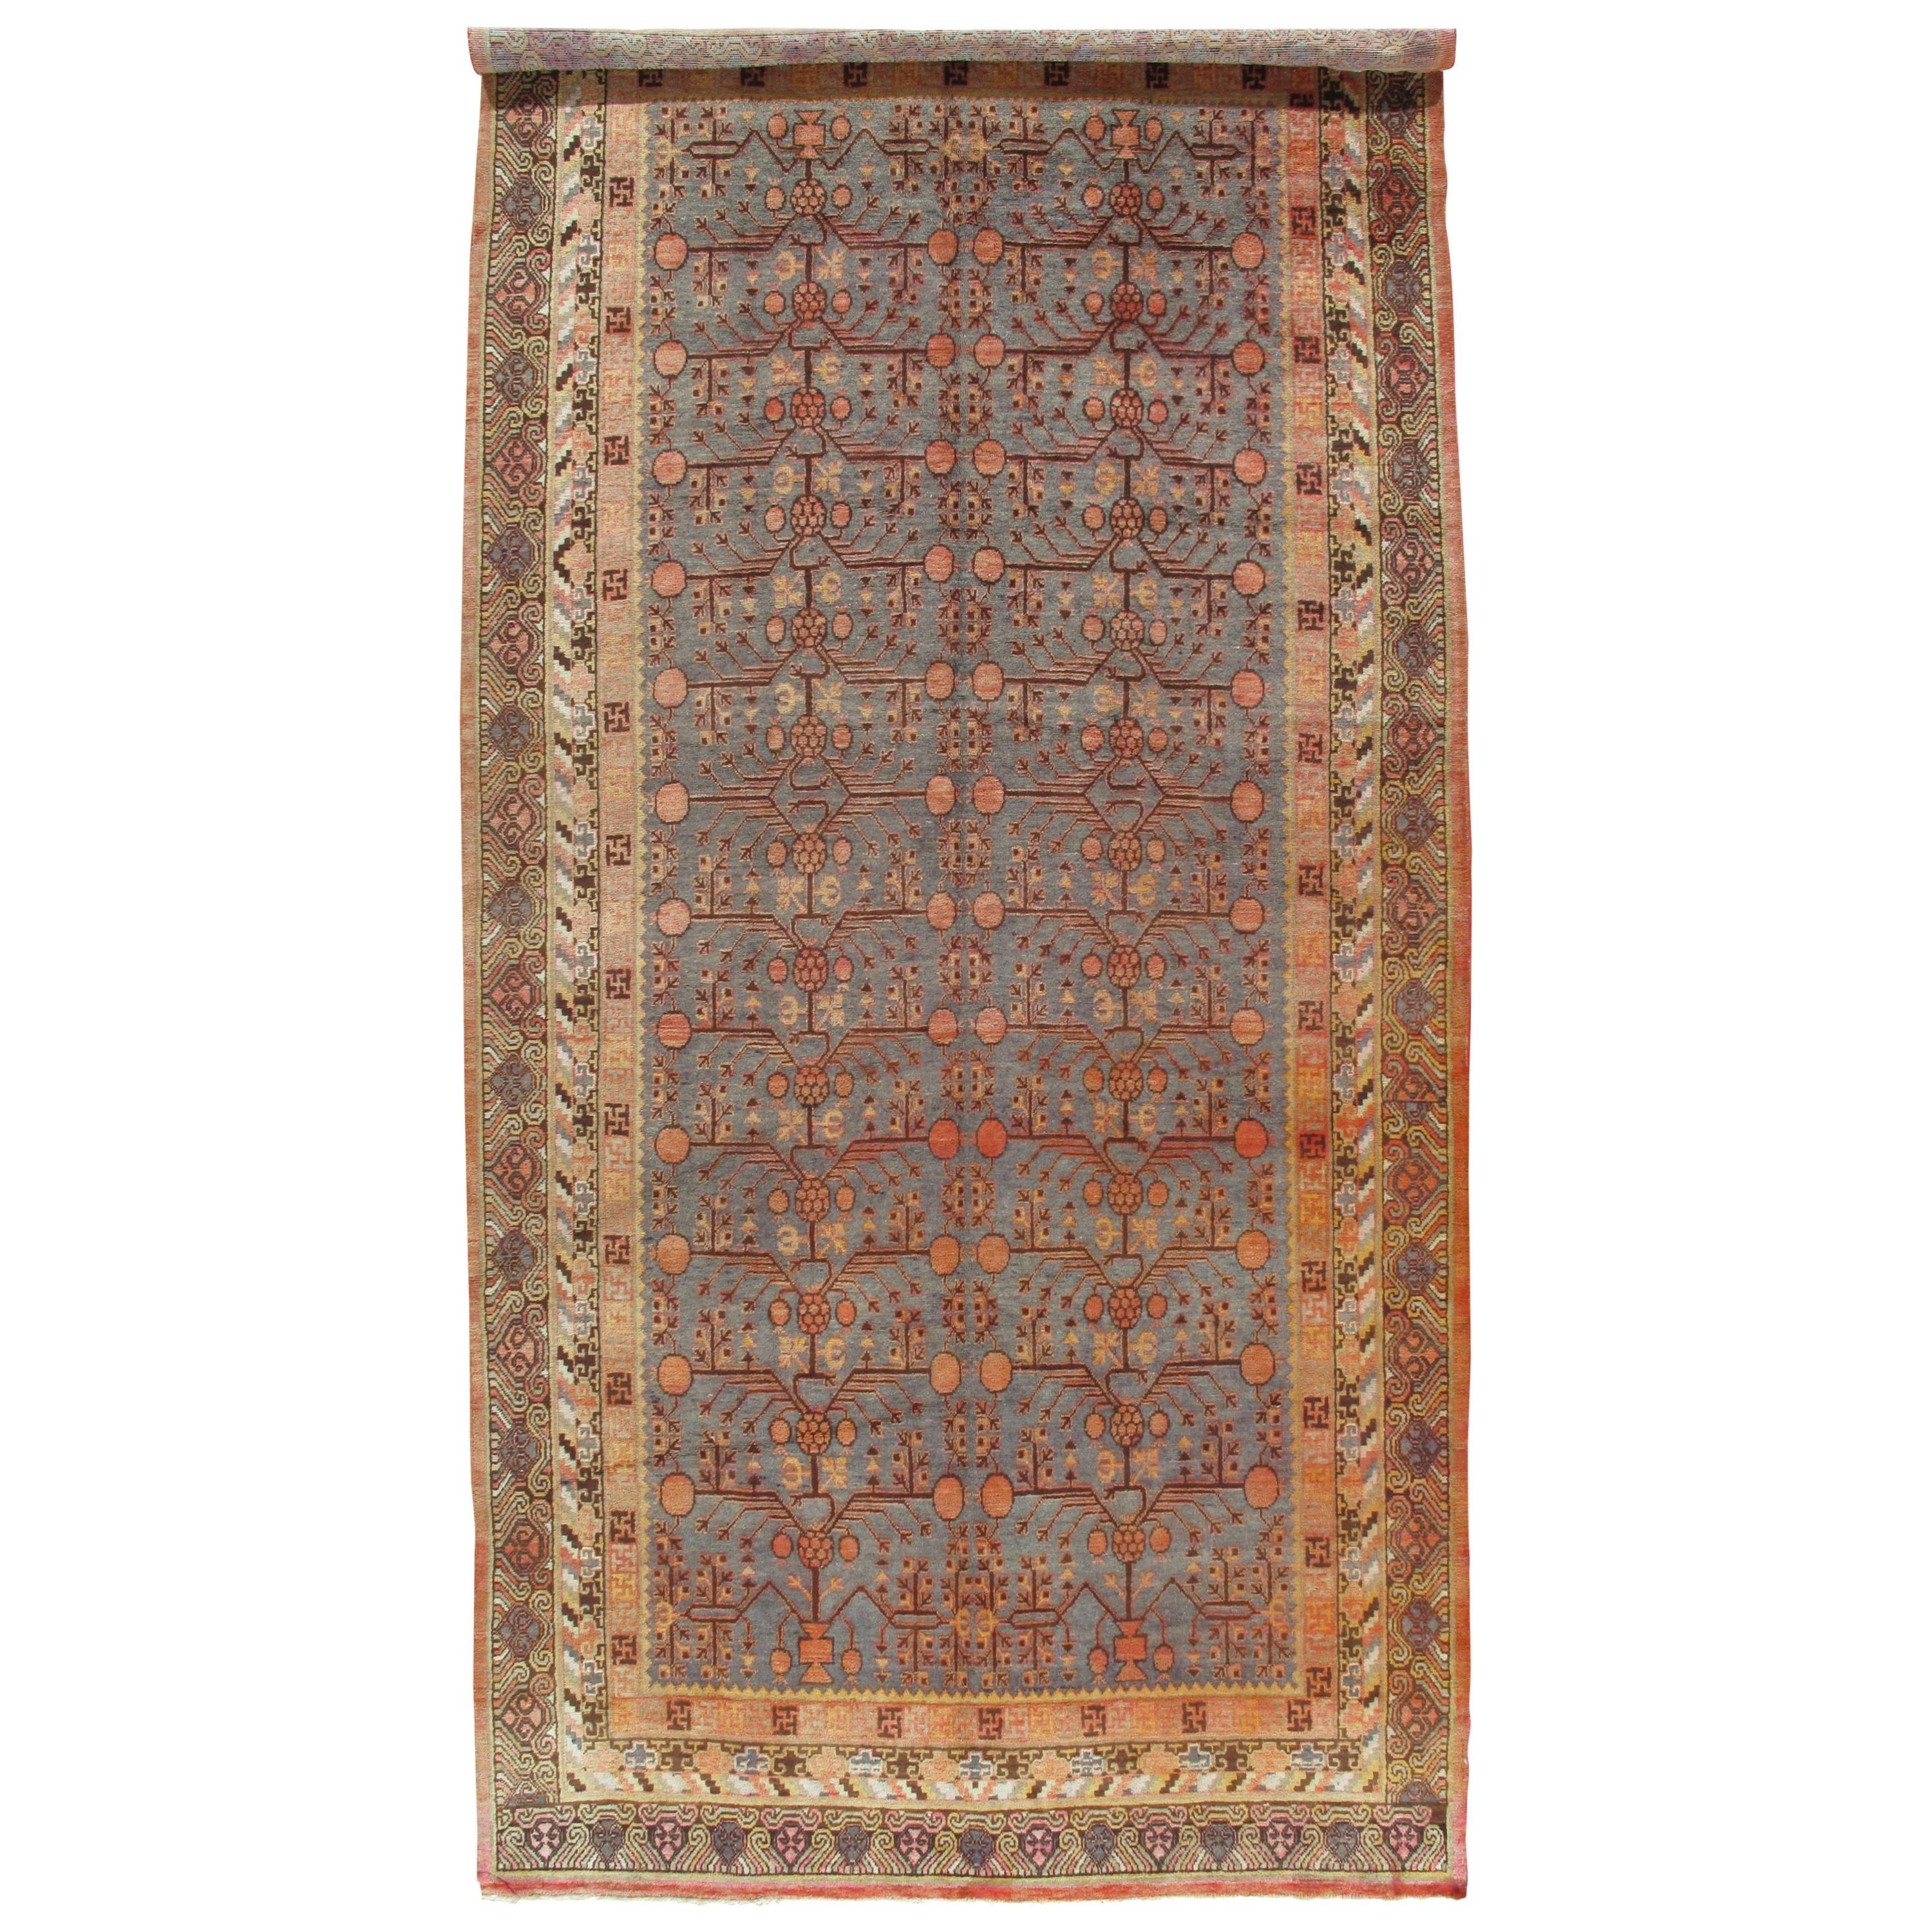 Vintage  Khotan-Teppich, handgefertigter orientalischer Teppich, weiche Muscheln, Beige, Braun, Blaugrau